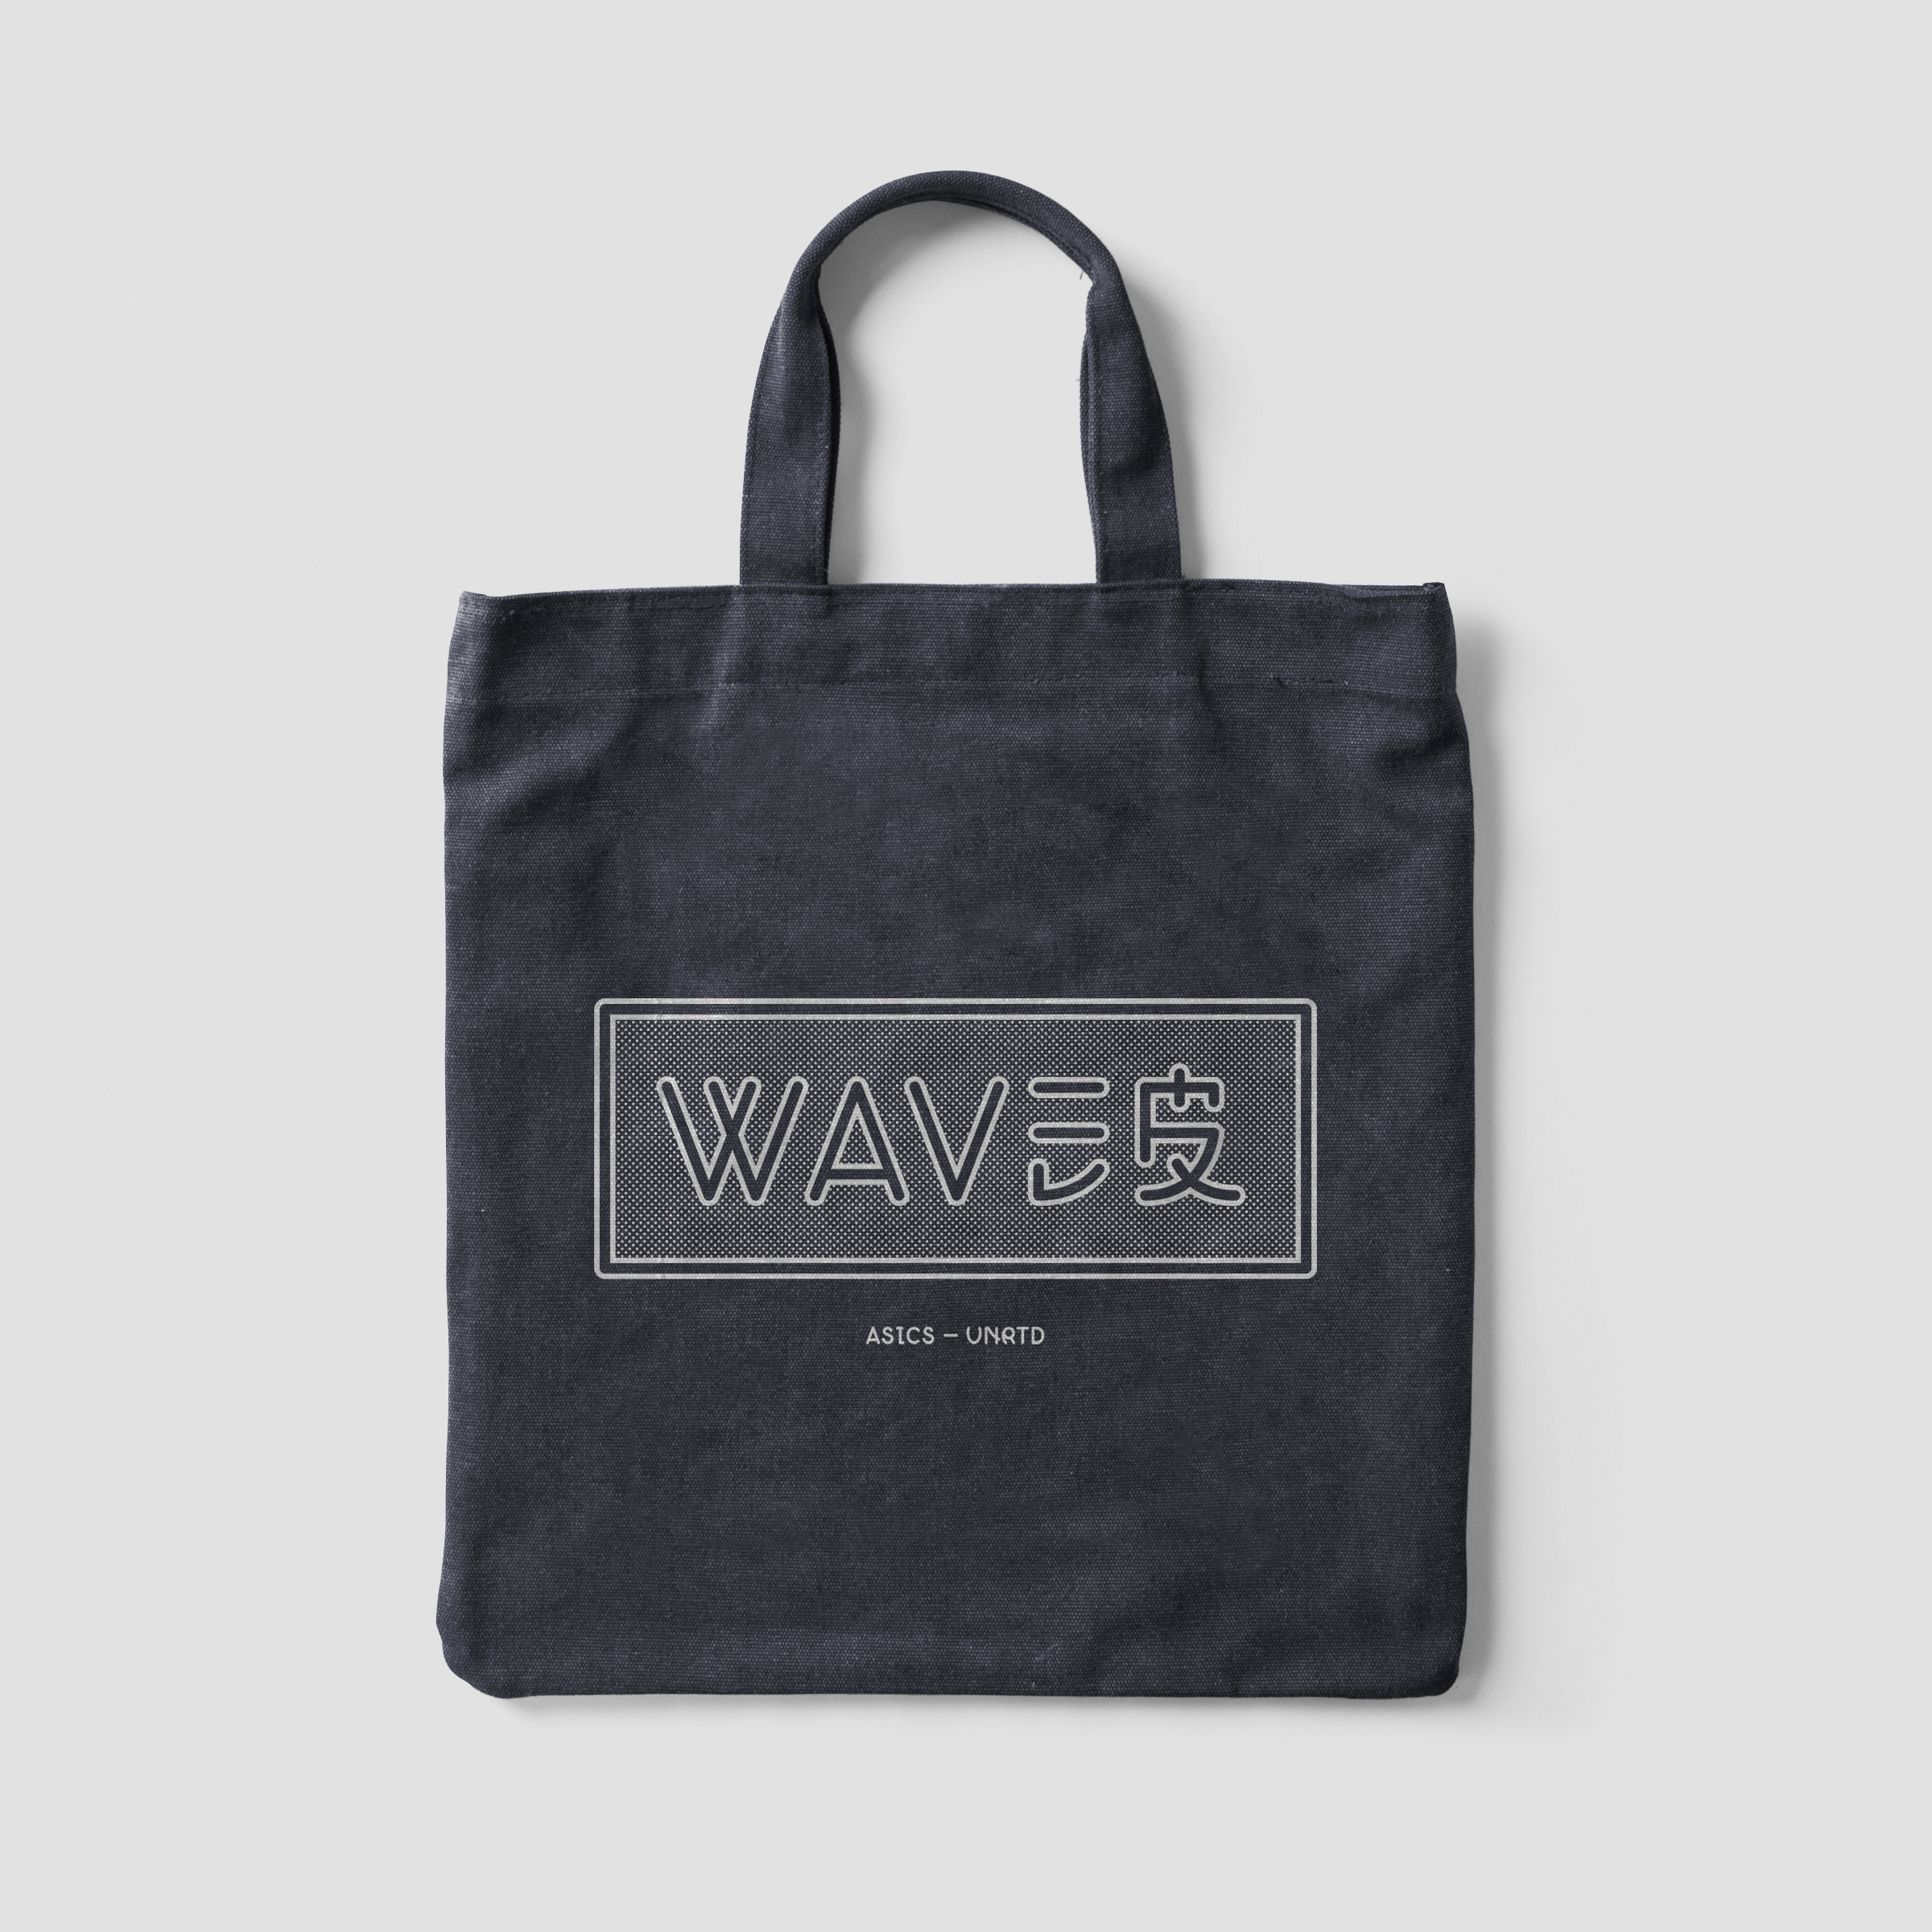 Waves_Tote_1